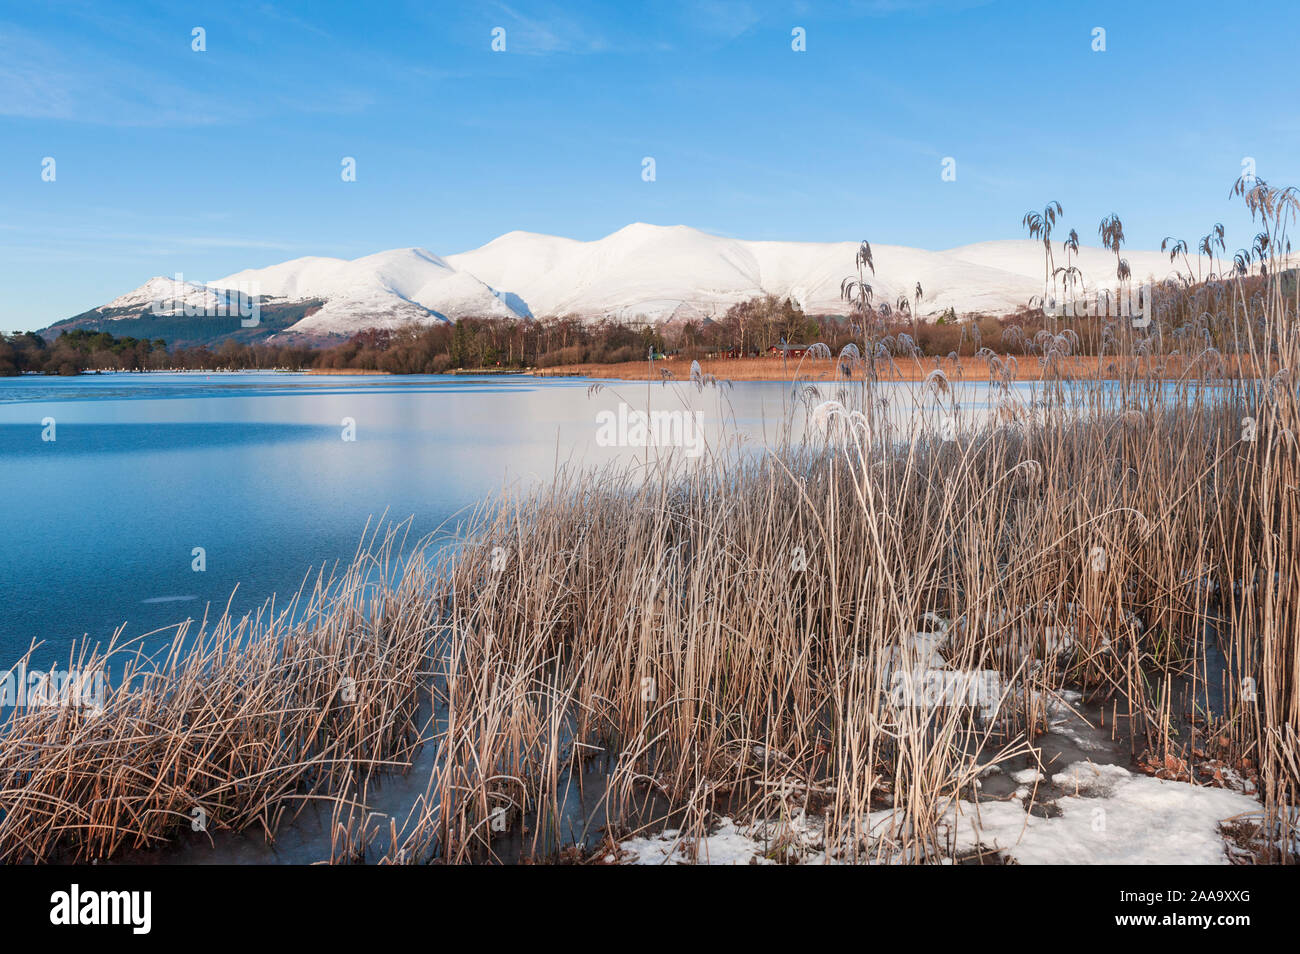 Vue paysage d'hiver de Lake District of the d Las Vegas un des Nord-est de Lakeland fells du littoral de la Derwent Water à Keswick Banque D'Images